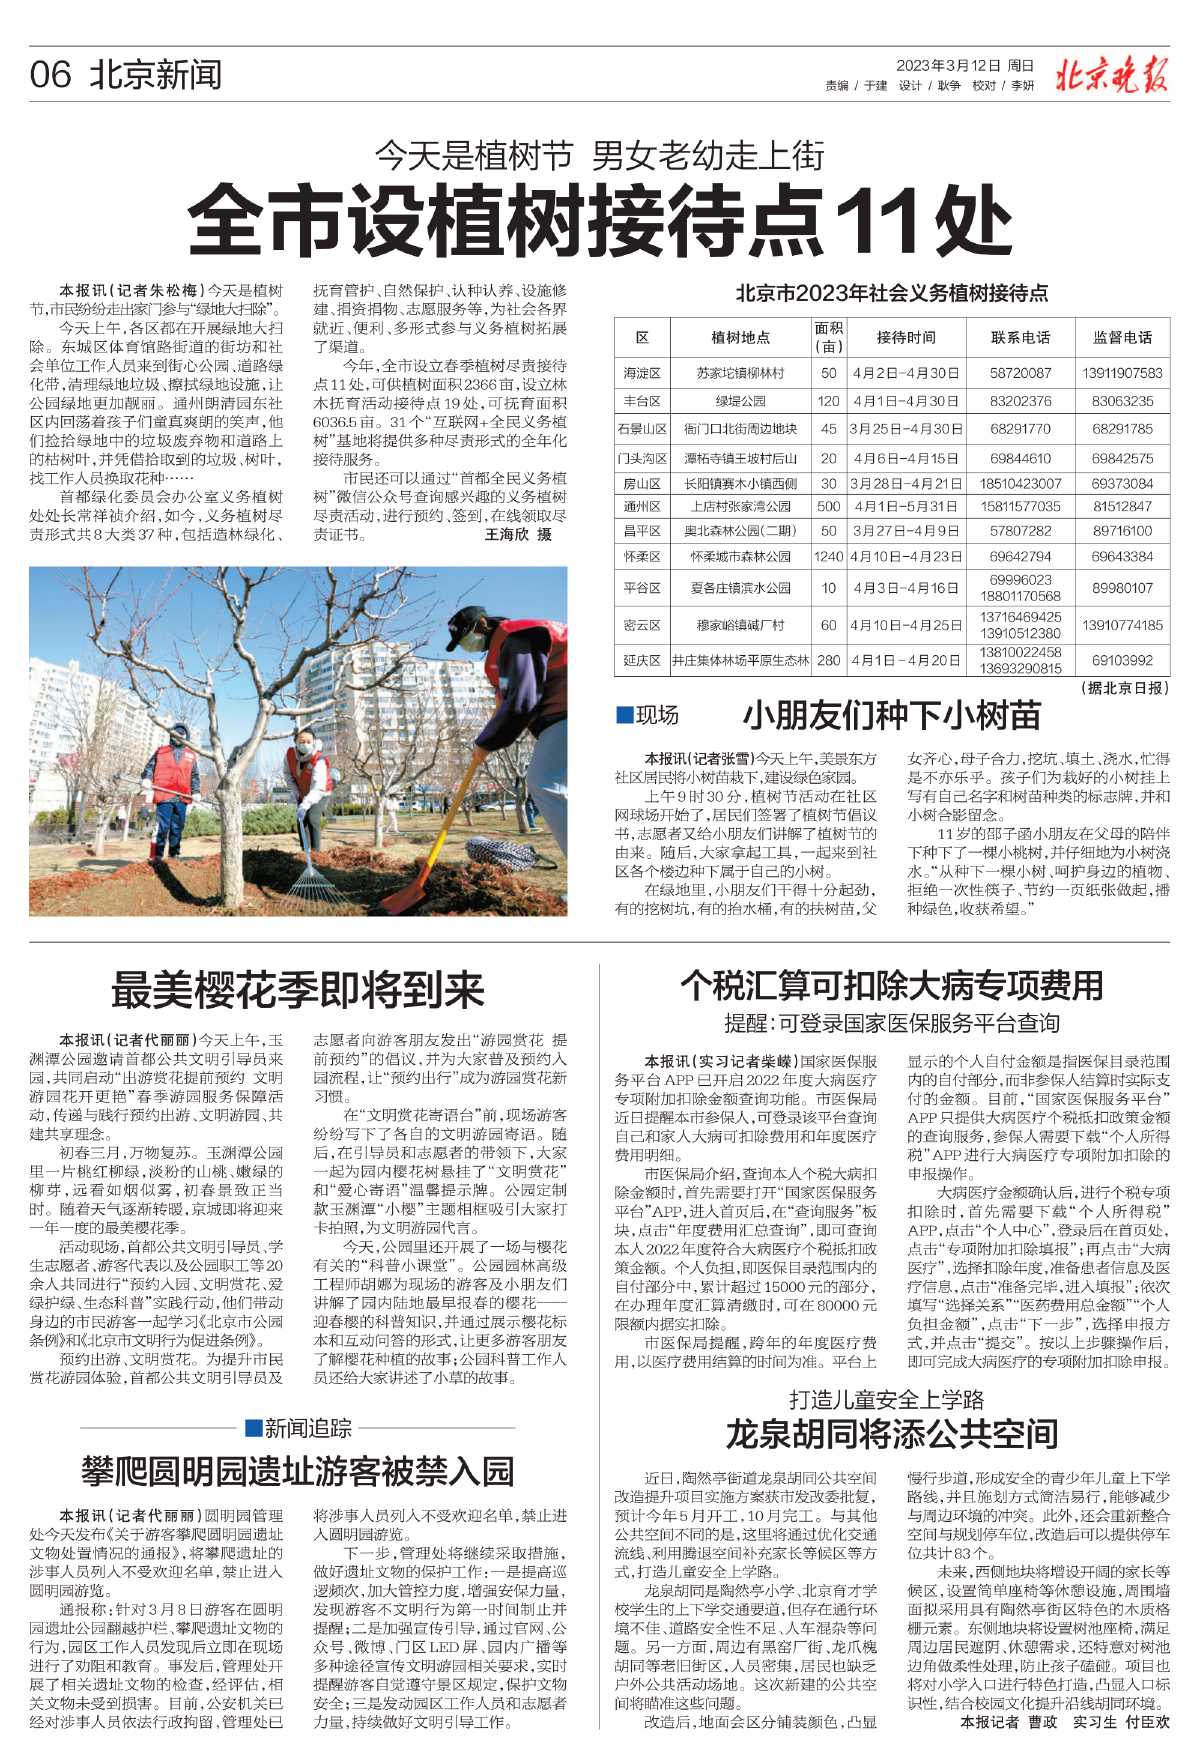 0312北京晚报-今天是植树节 男女老幼走上街%0D%0A全市设植树接待点11处.jpg